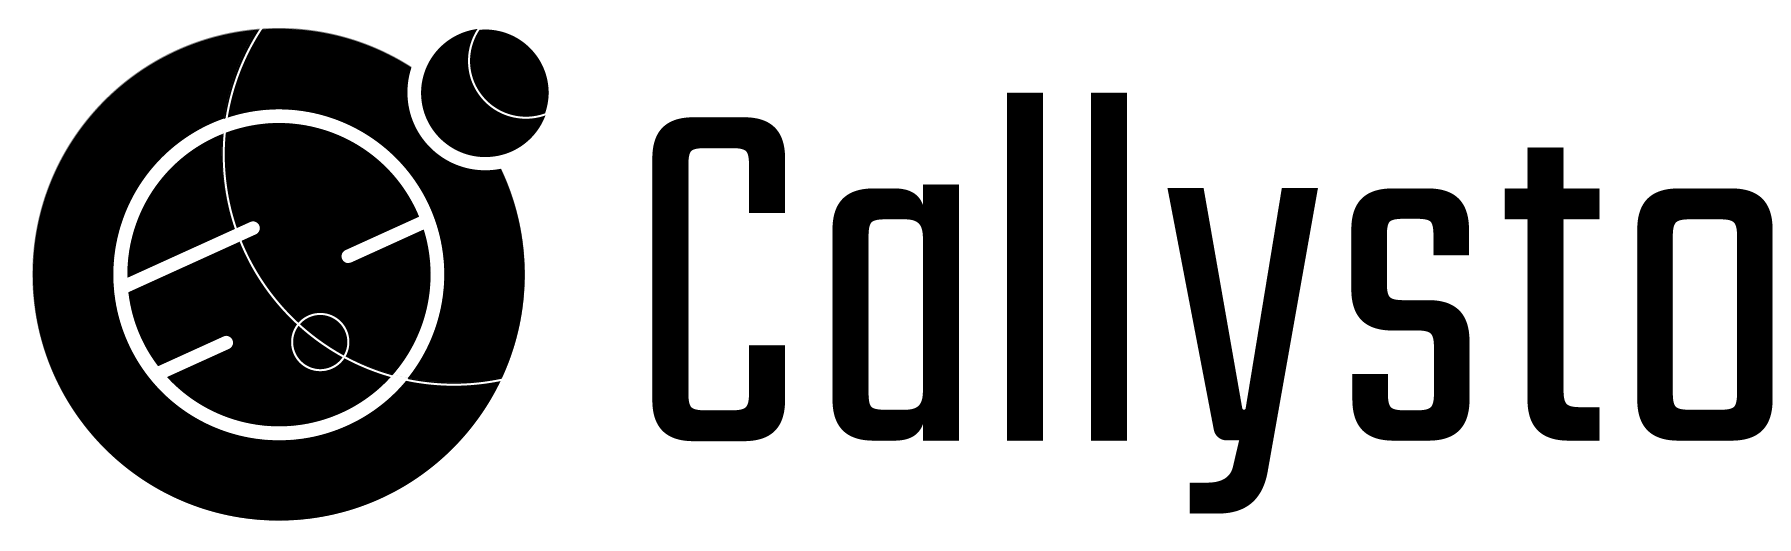 Callysto Logo